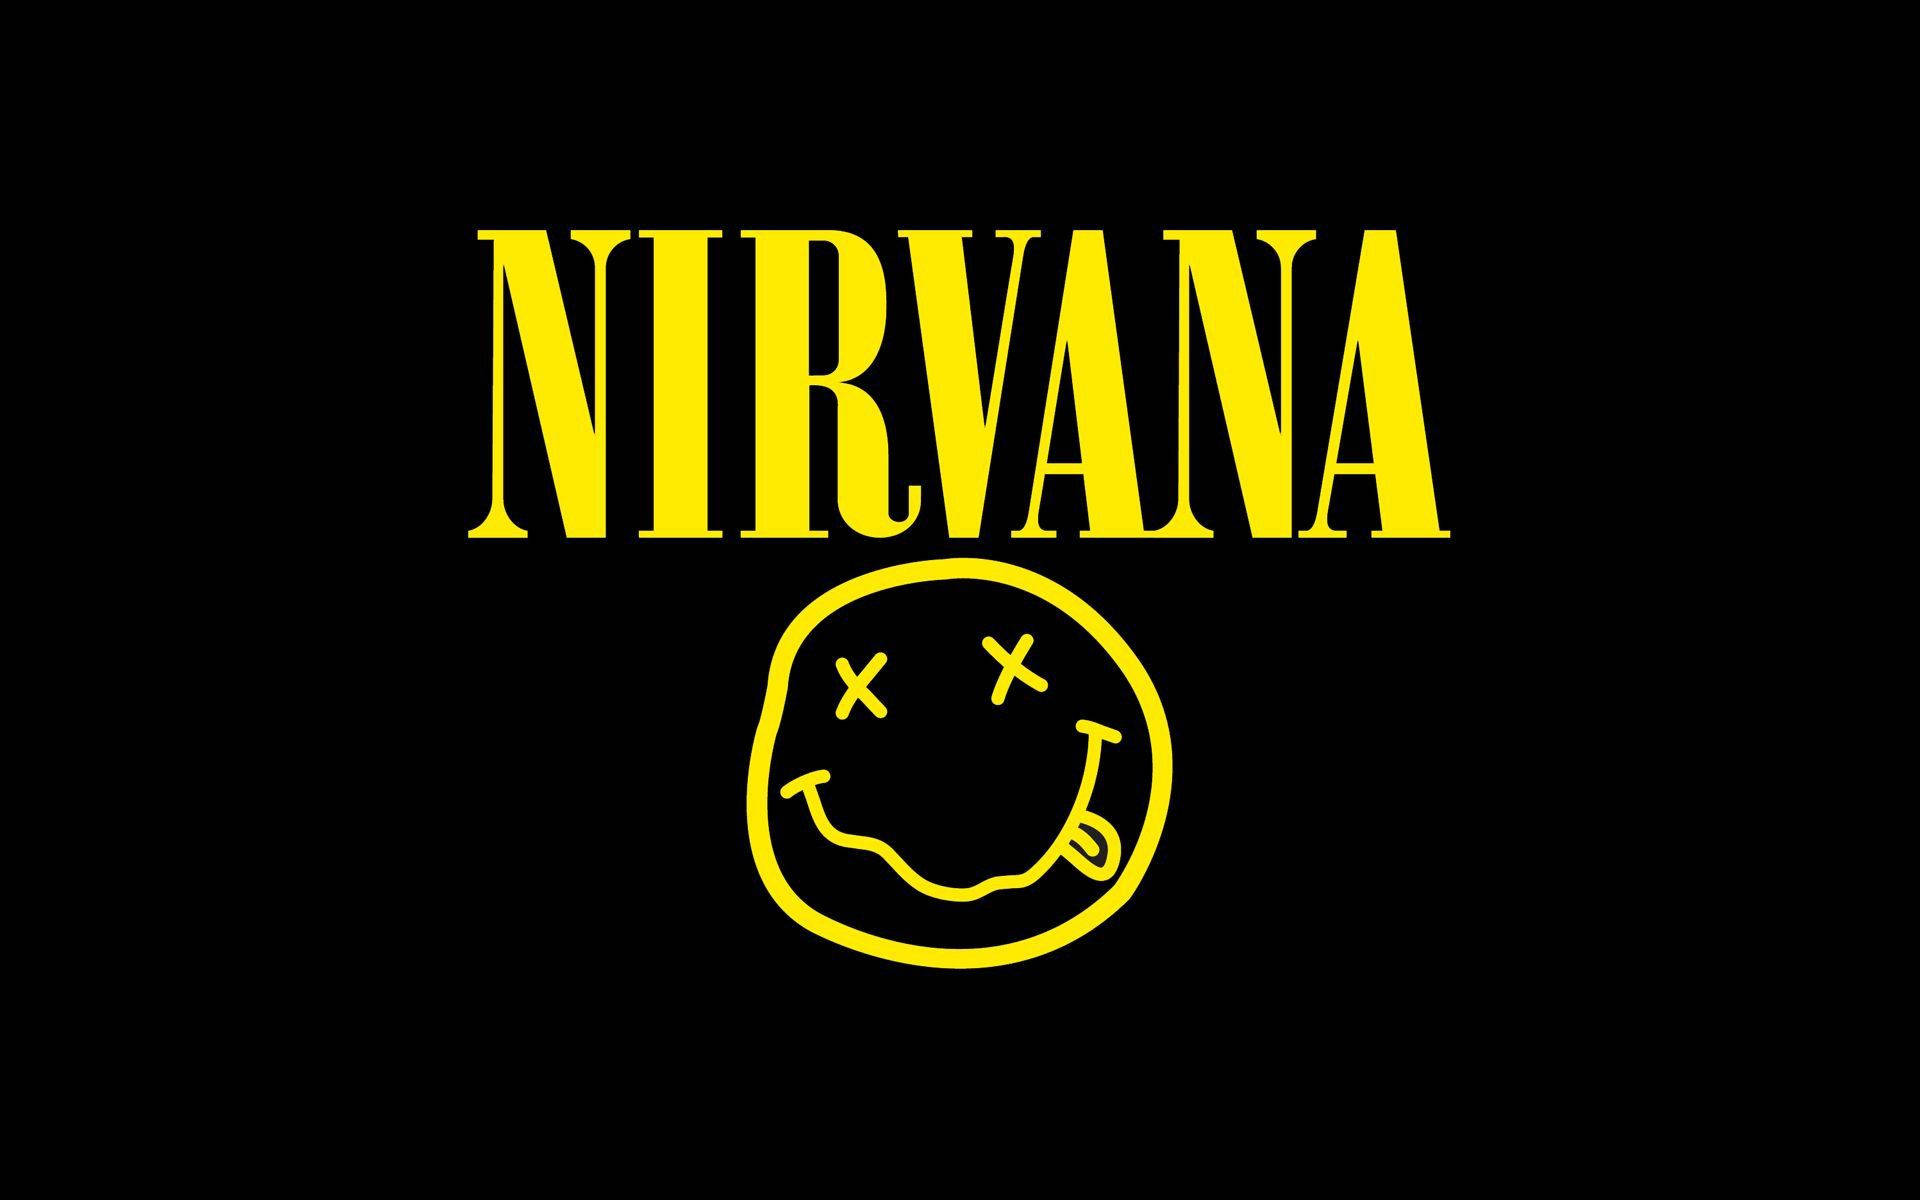 Nirvananiedliches Smiley-gesicht Logo Wallpaper